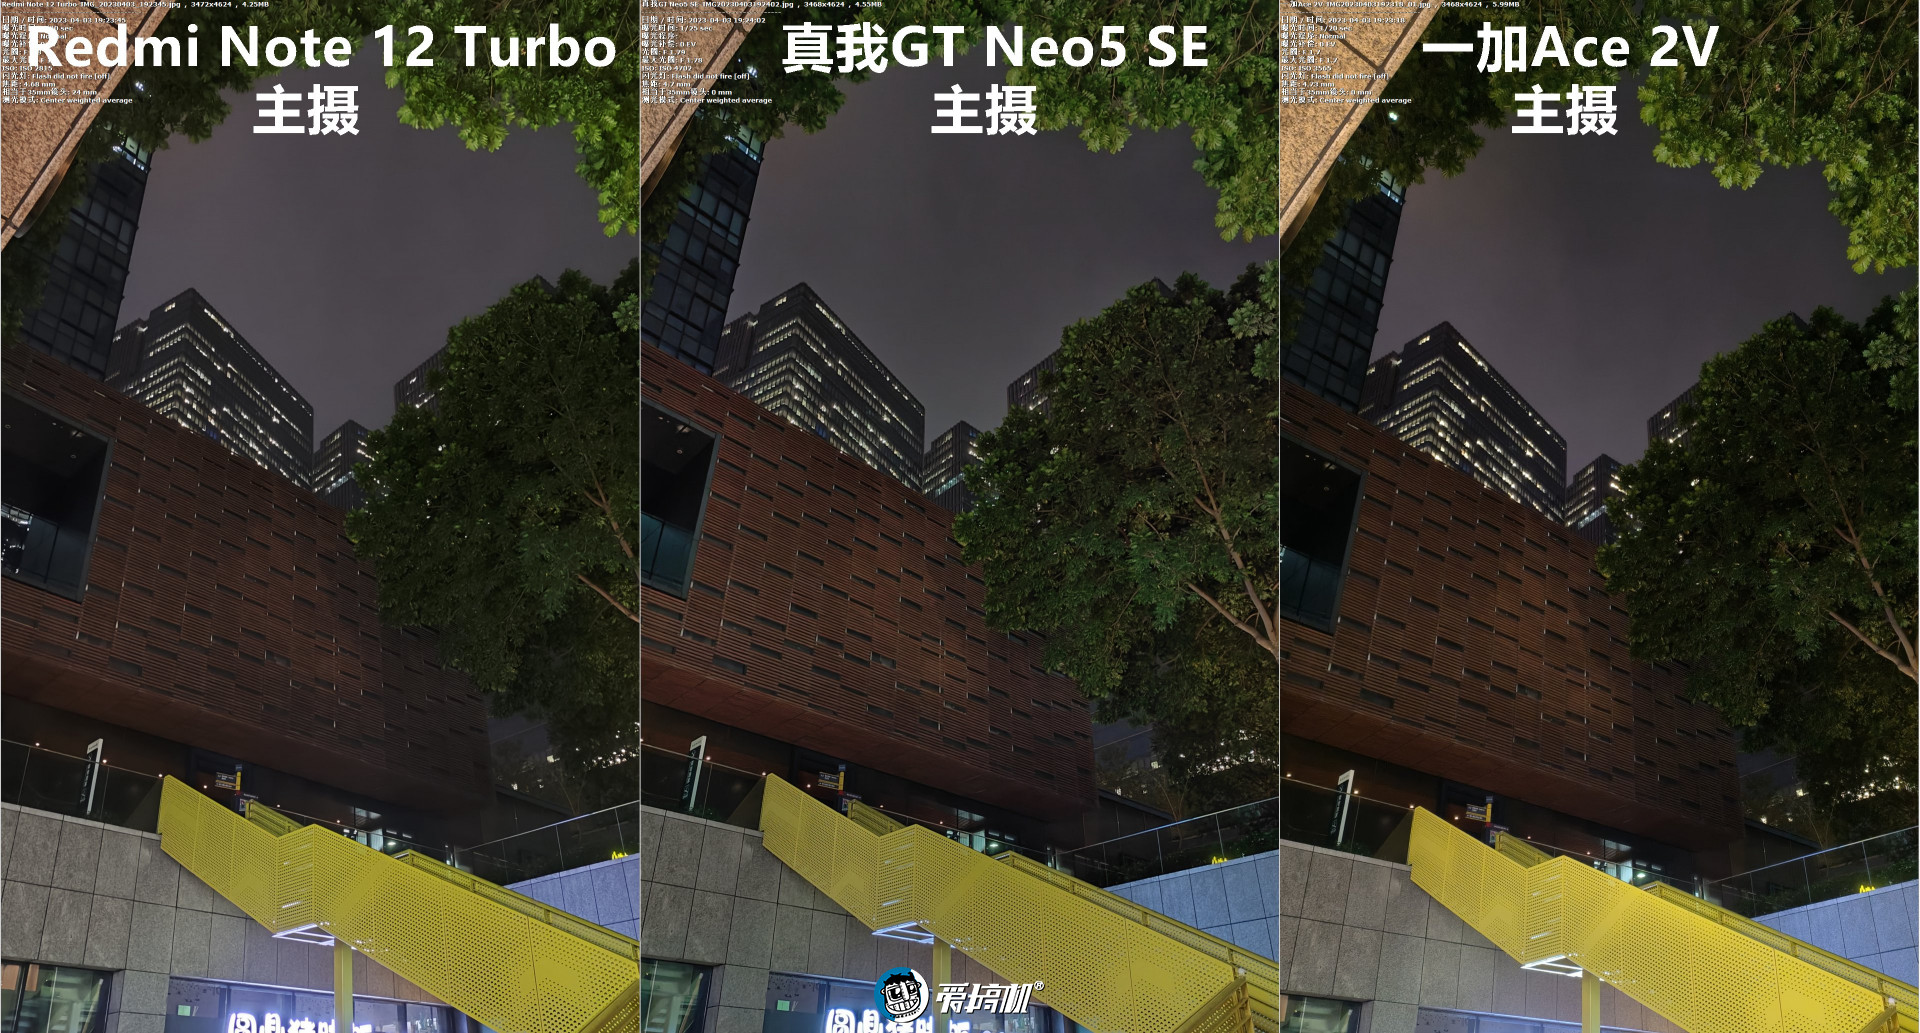 2000元档拍照对比：真我GT Neo5 SE对Redmi Note 12 Turbo、一加Ace 2V